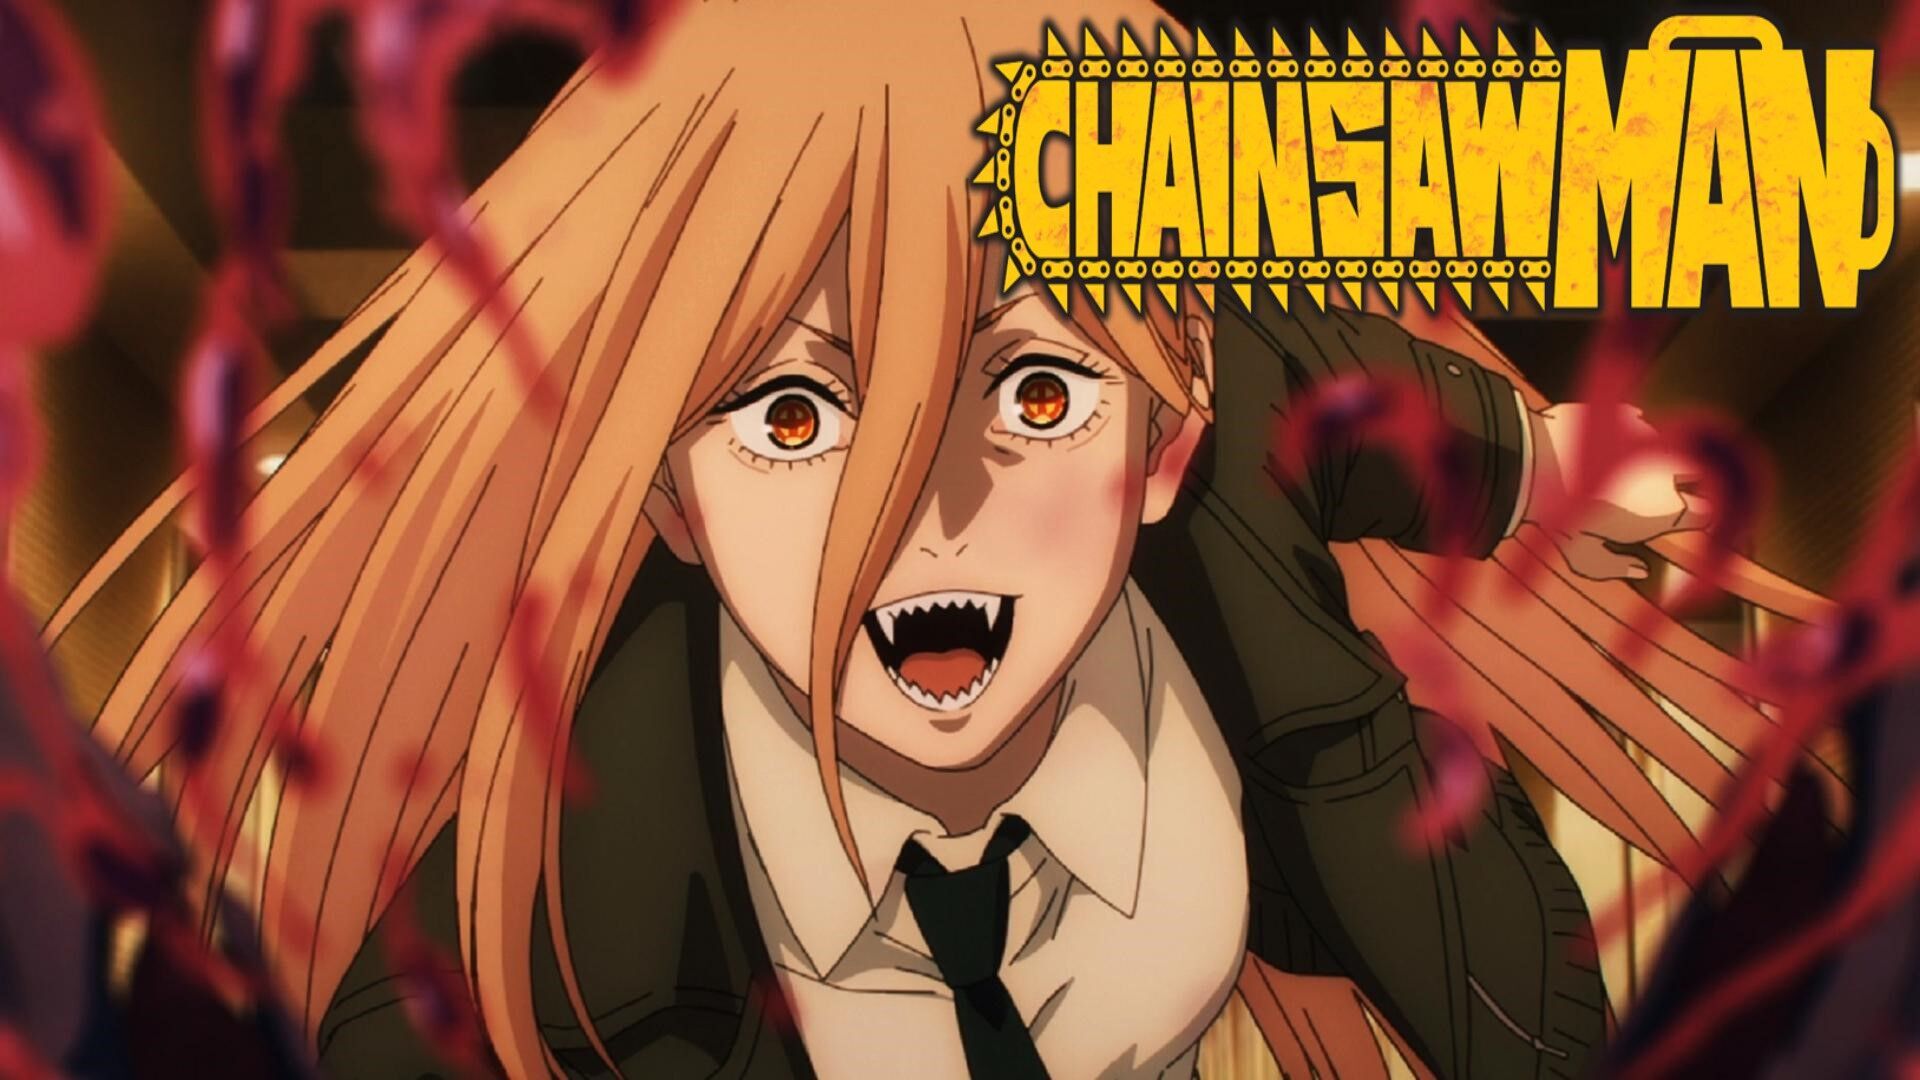 Se anunciará pronto la temporada 2 de Chainsaw Man? De momento el anime  recibe un cosplay de Power increíble que arrasa en TikTok - Vandal Random